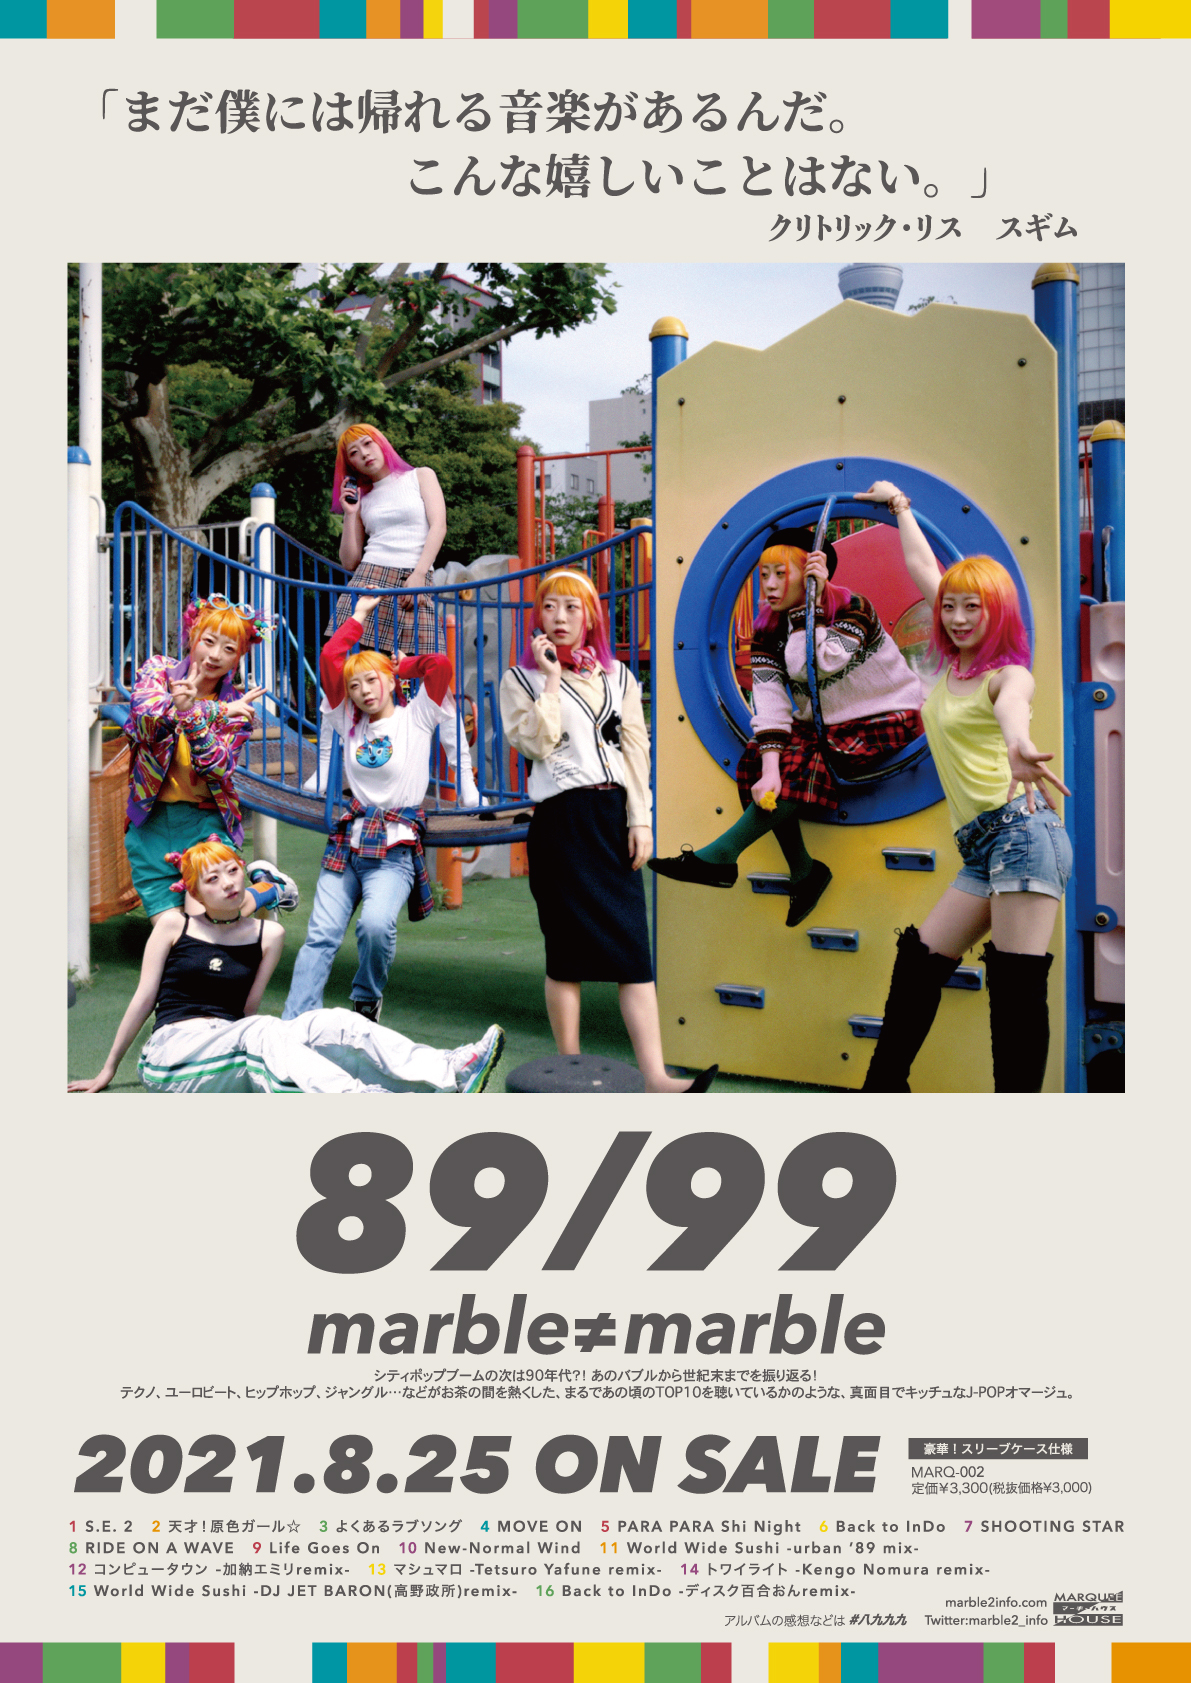 俺を照らす89/99 〜 marble≠marble「89/99」レコ発2マンライブ 〜